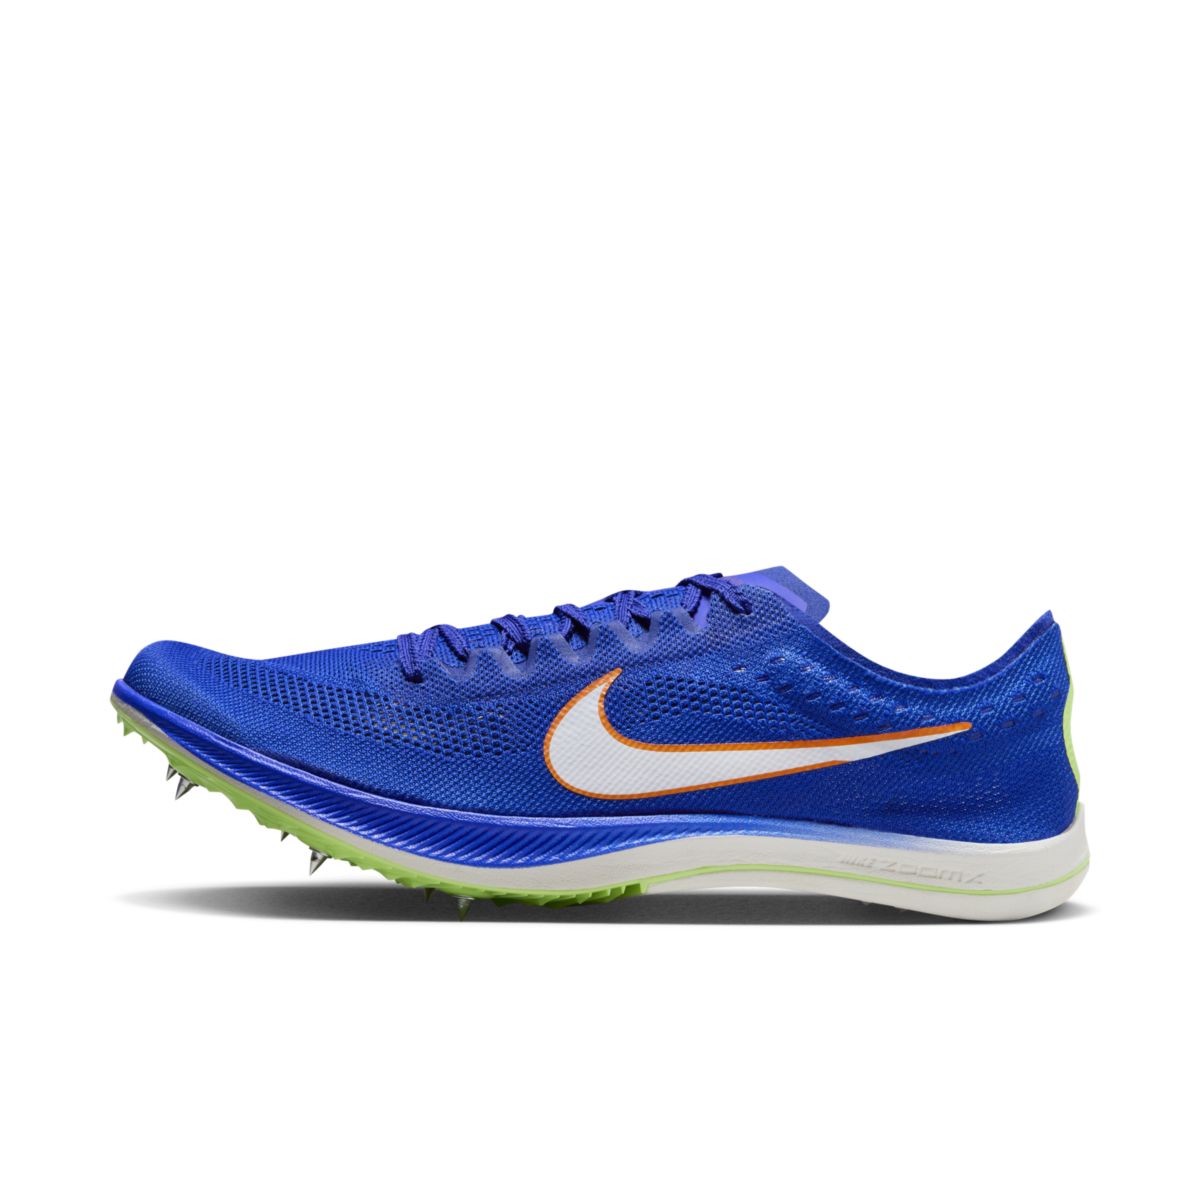 Nike, ZoomX Dragonfly, Unisex, Racer Blue/Safety Orange/Lime Blast/White (400)